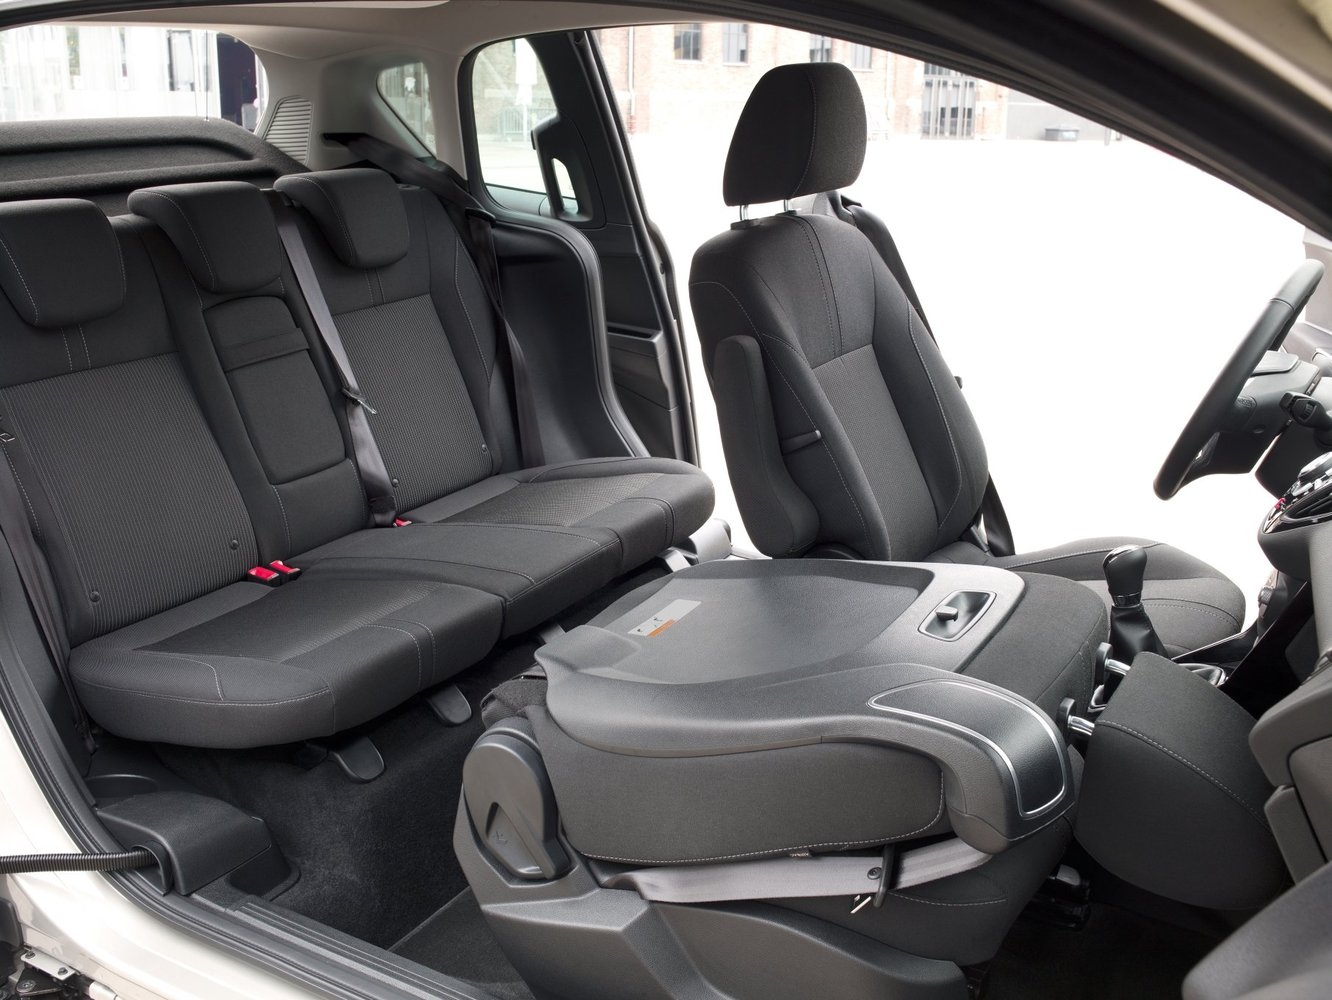 минивэн Ford B-MAX 2012 - 2016г выпуска модификация 1.0 MT (100 л.с.)